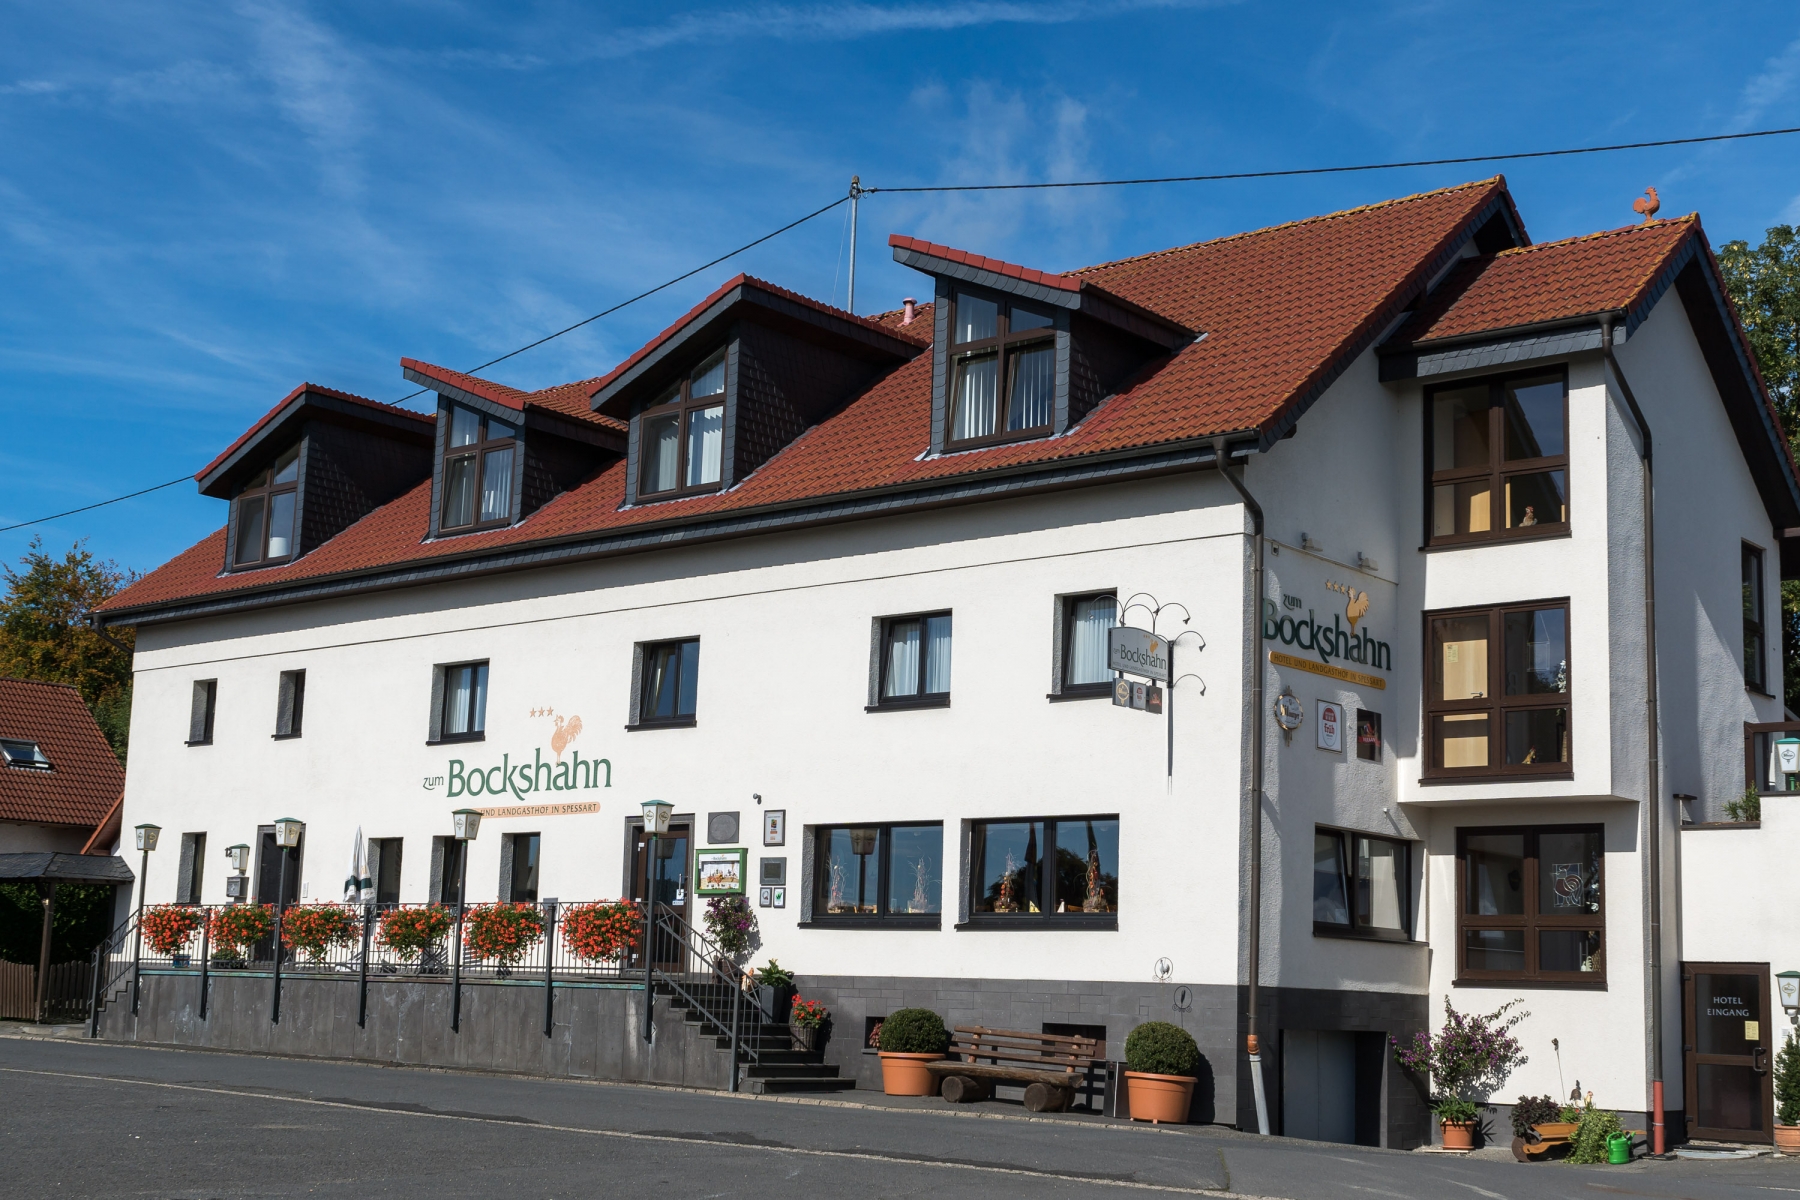 Hotel Und Landgasthof Zum Bockshahn <br/>96.00 ew <br/> <a href='http://vakantieoplossing.nl/outpage/?id=06418494220b500fda6612d952ed64d4' target='_blank'>View Details</a>